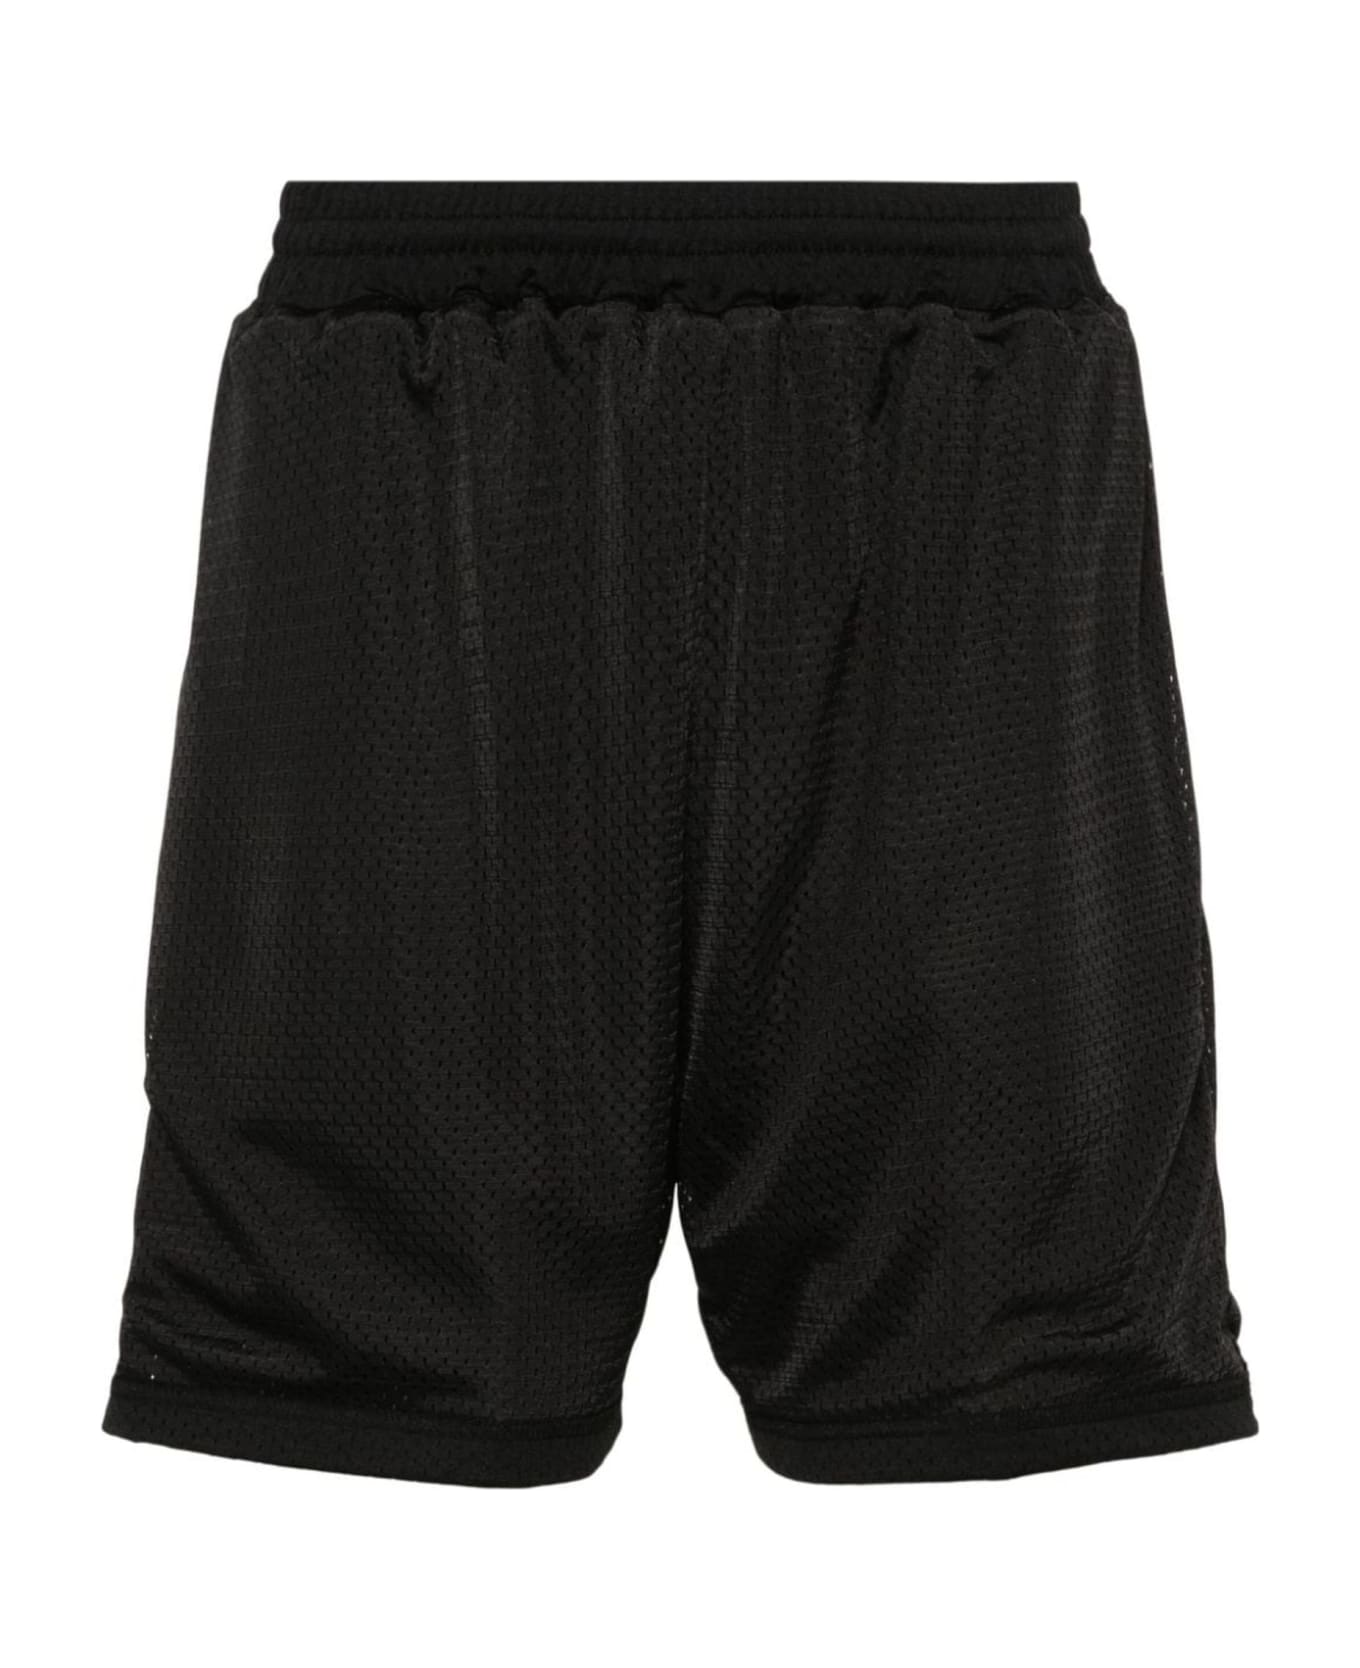 REPRESENT Shorts Black - Black